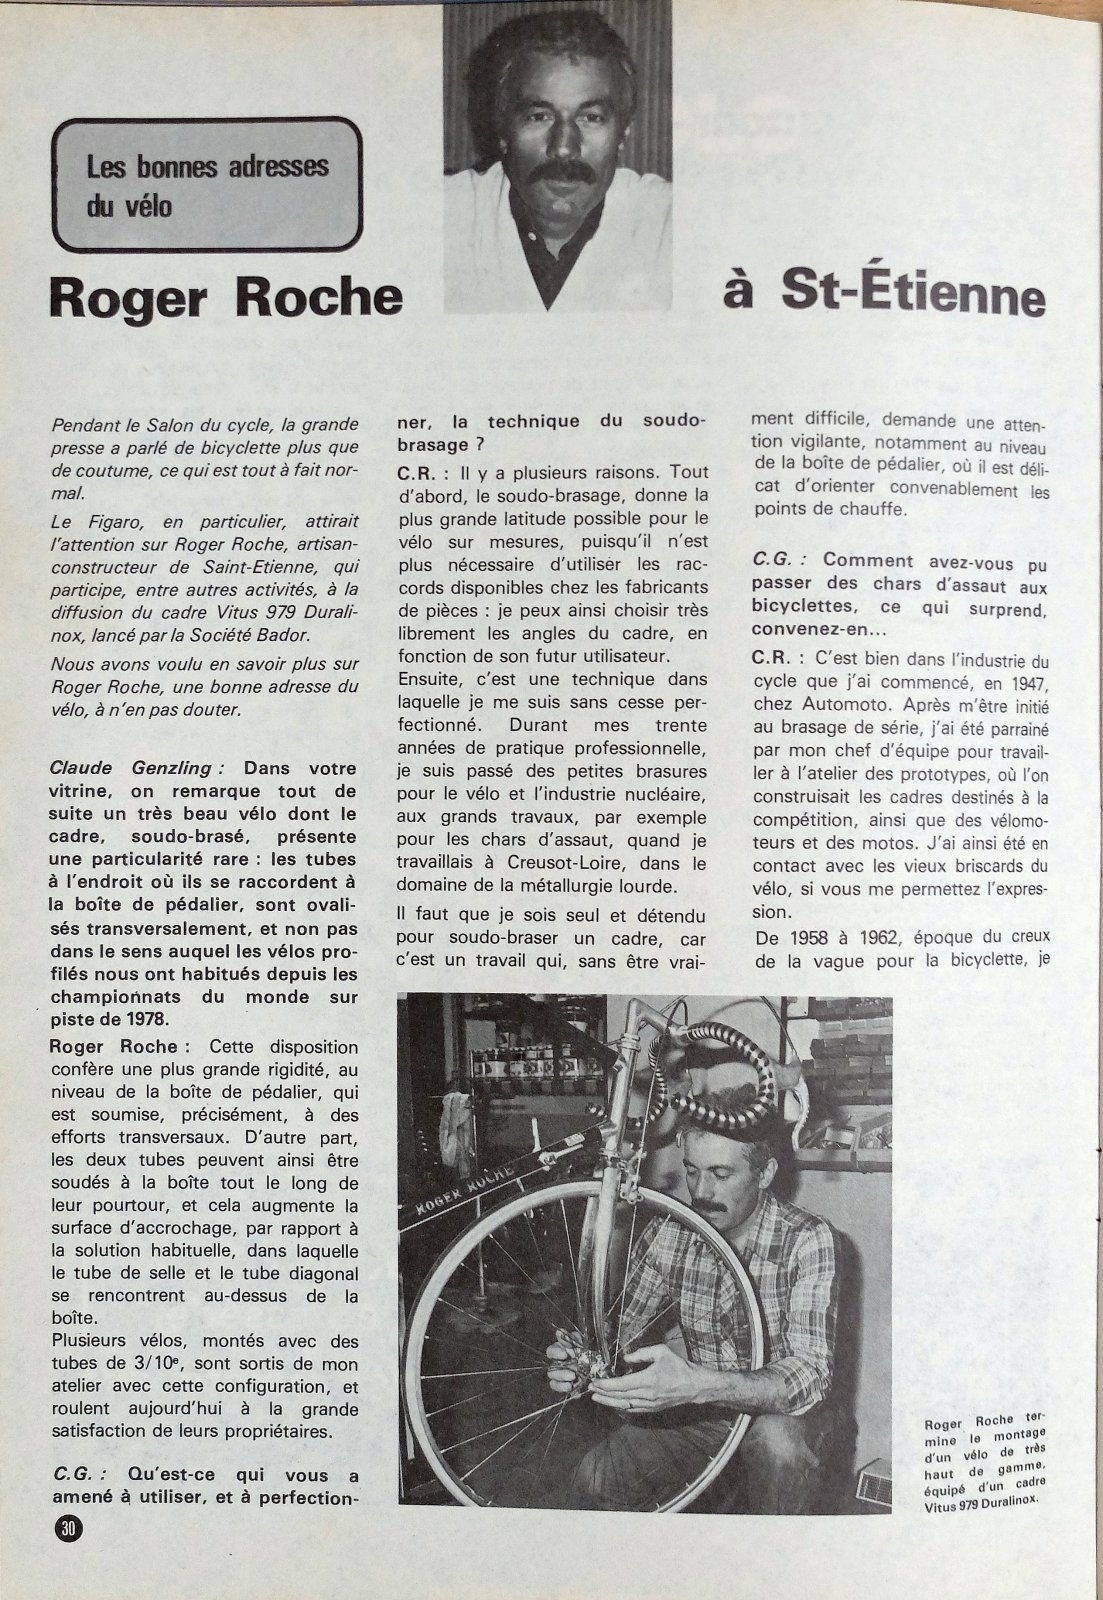 Roger Roche frame builder rahmenbauer telaista constructeur (1).jpg